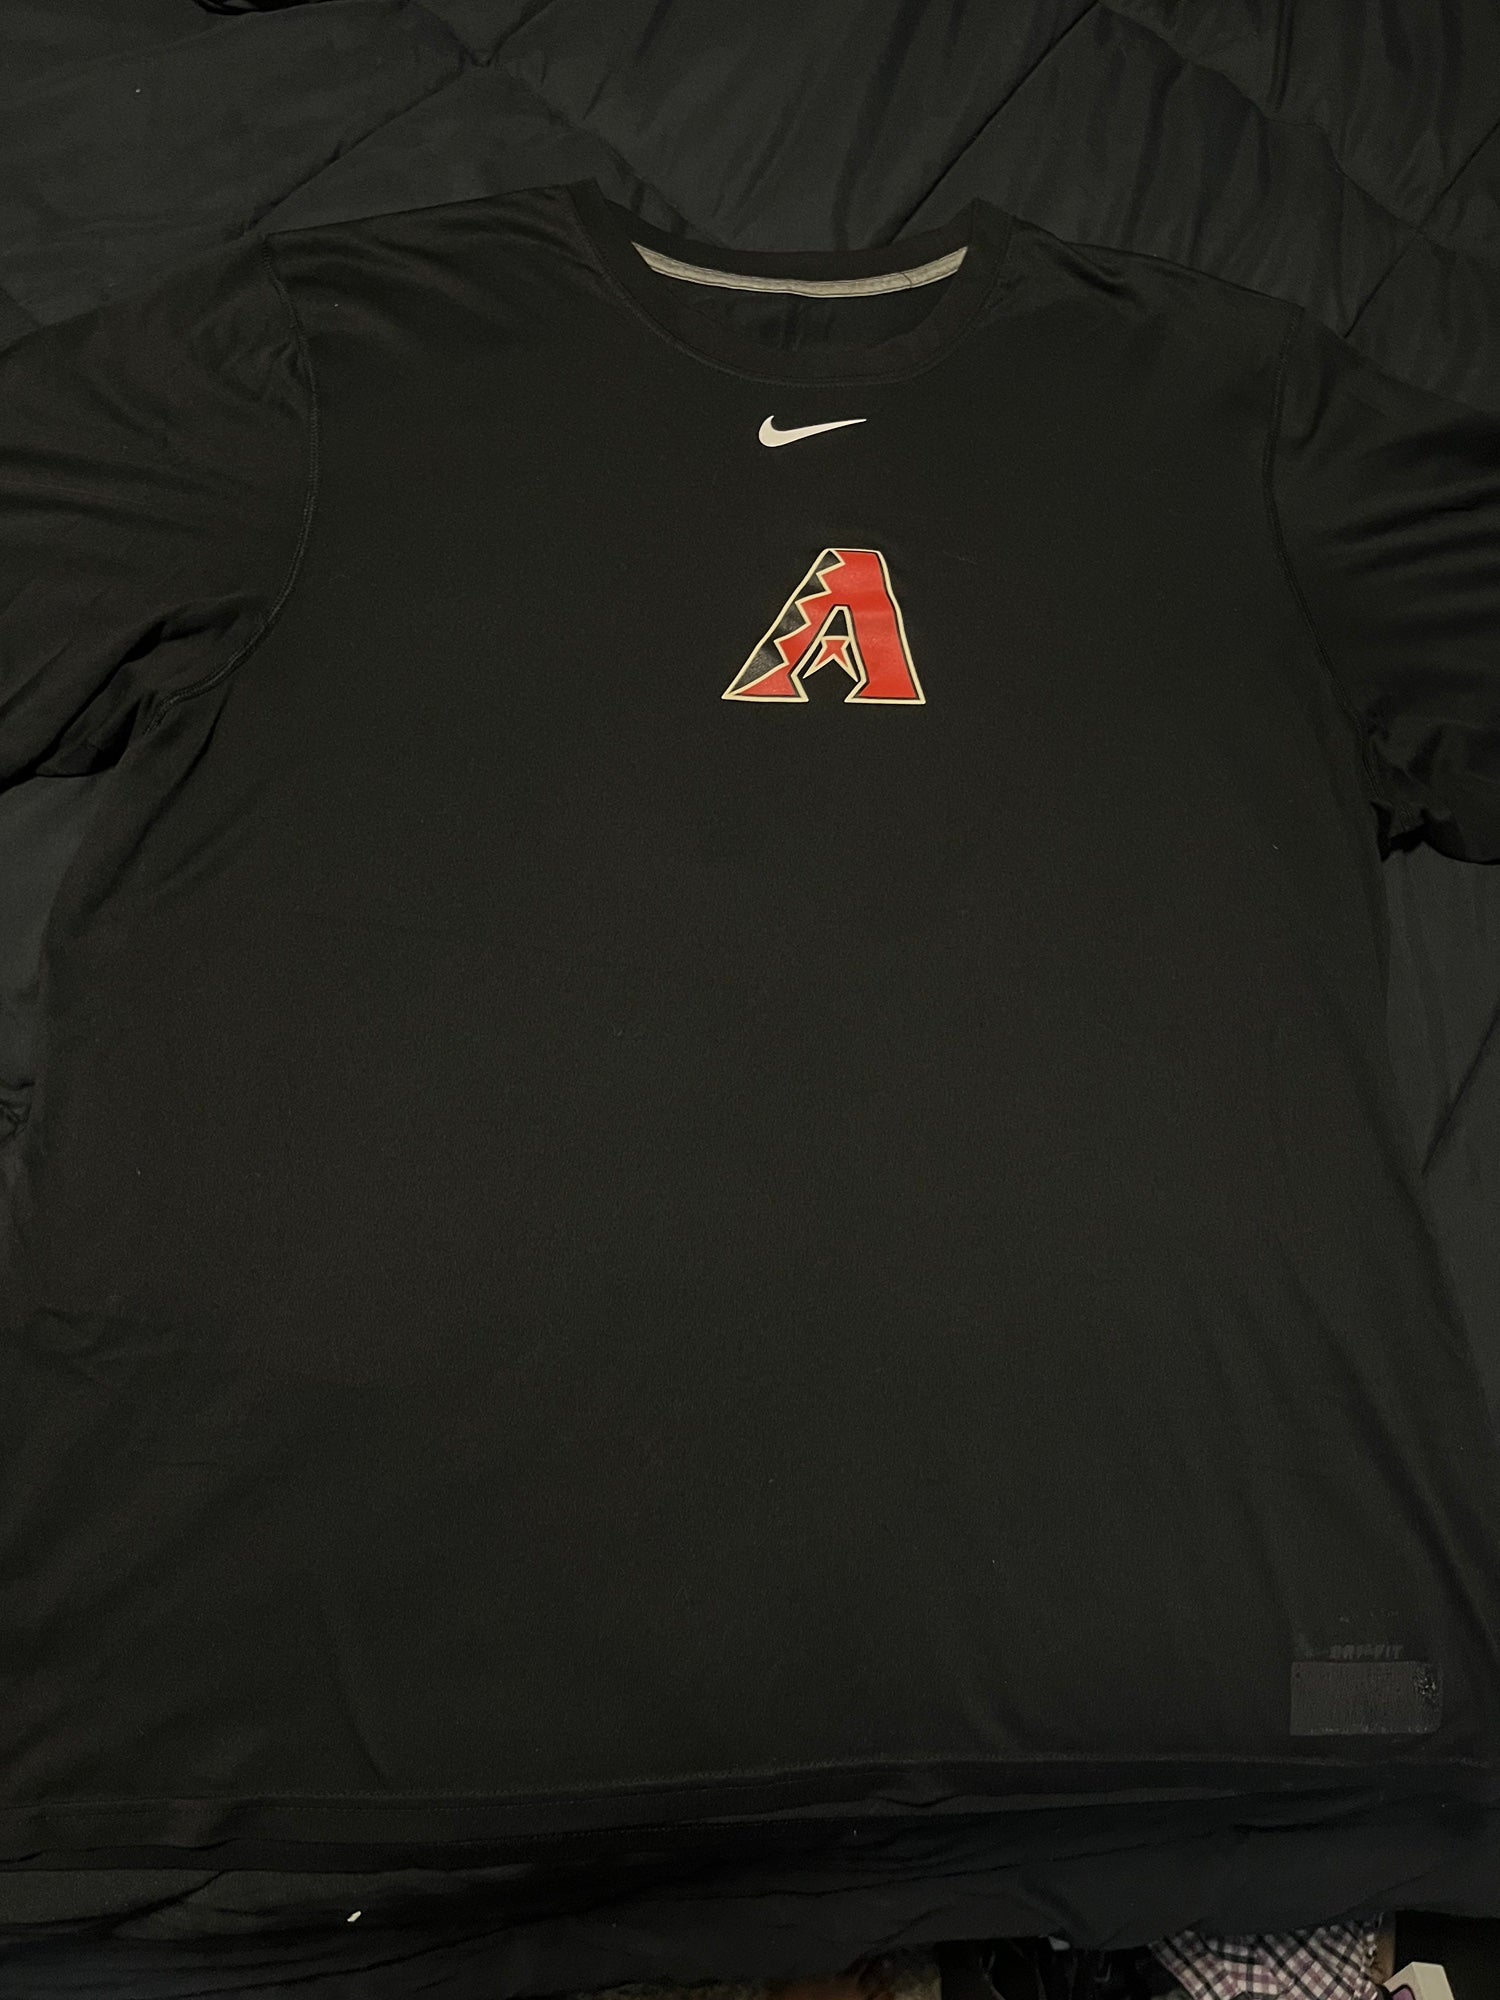 Arizona Diamondbacks Nike Pro MLB Shirt XL